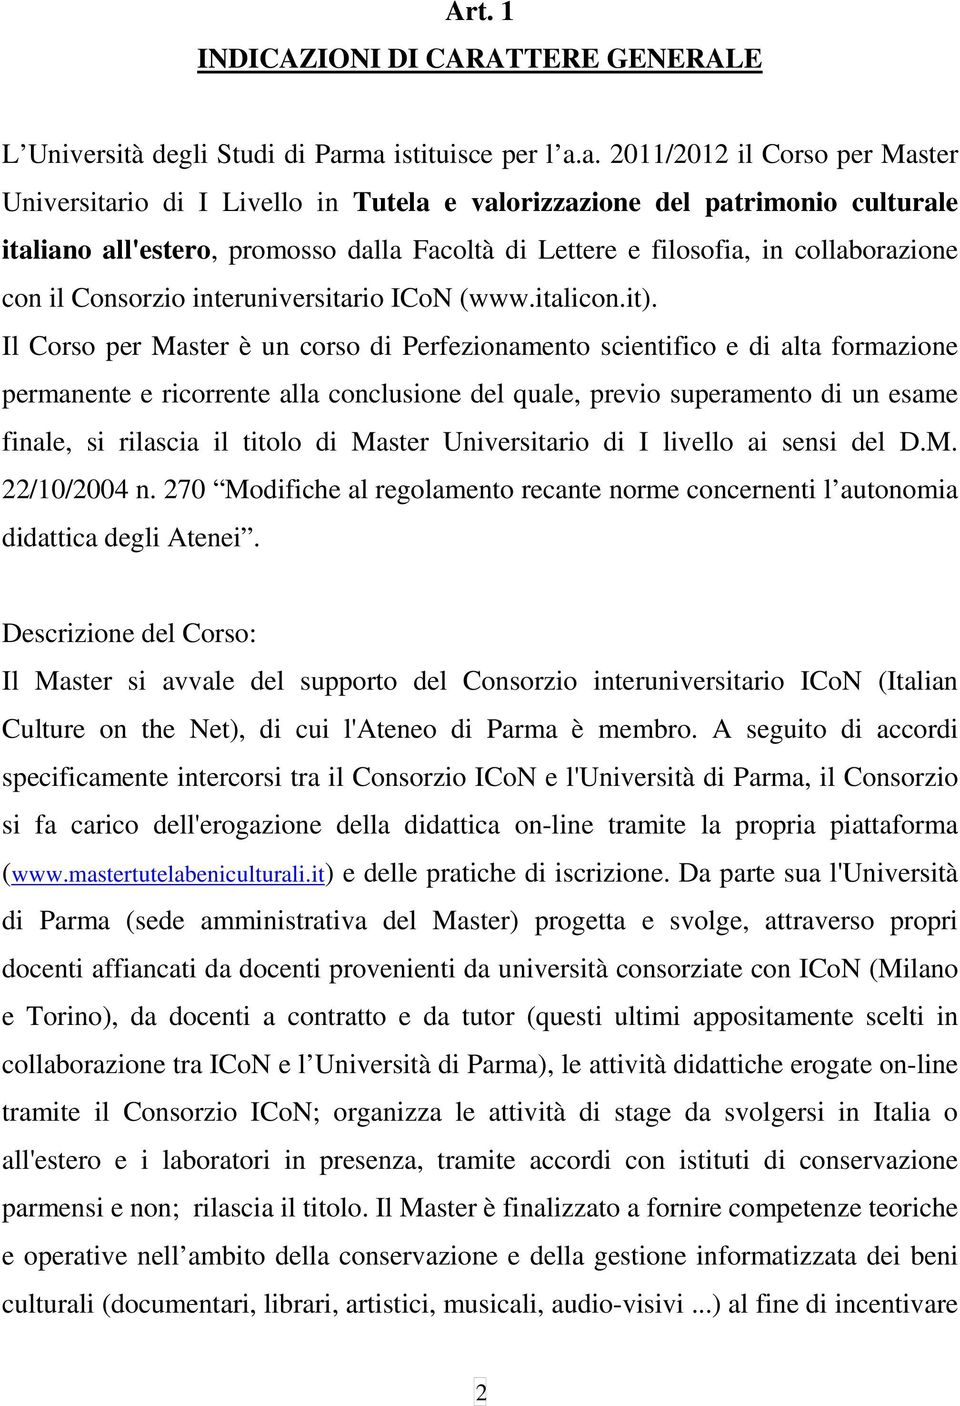 filosofia, in collaborazione con il Consorzio interuniversitario ICoN (www.italicon.it).